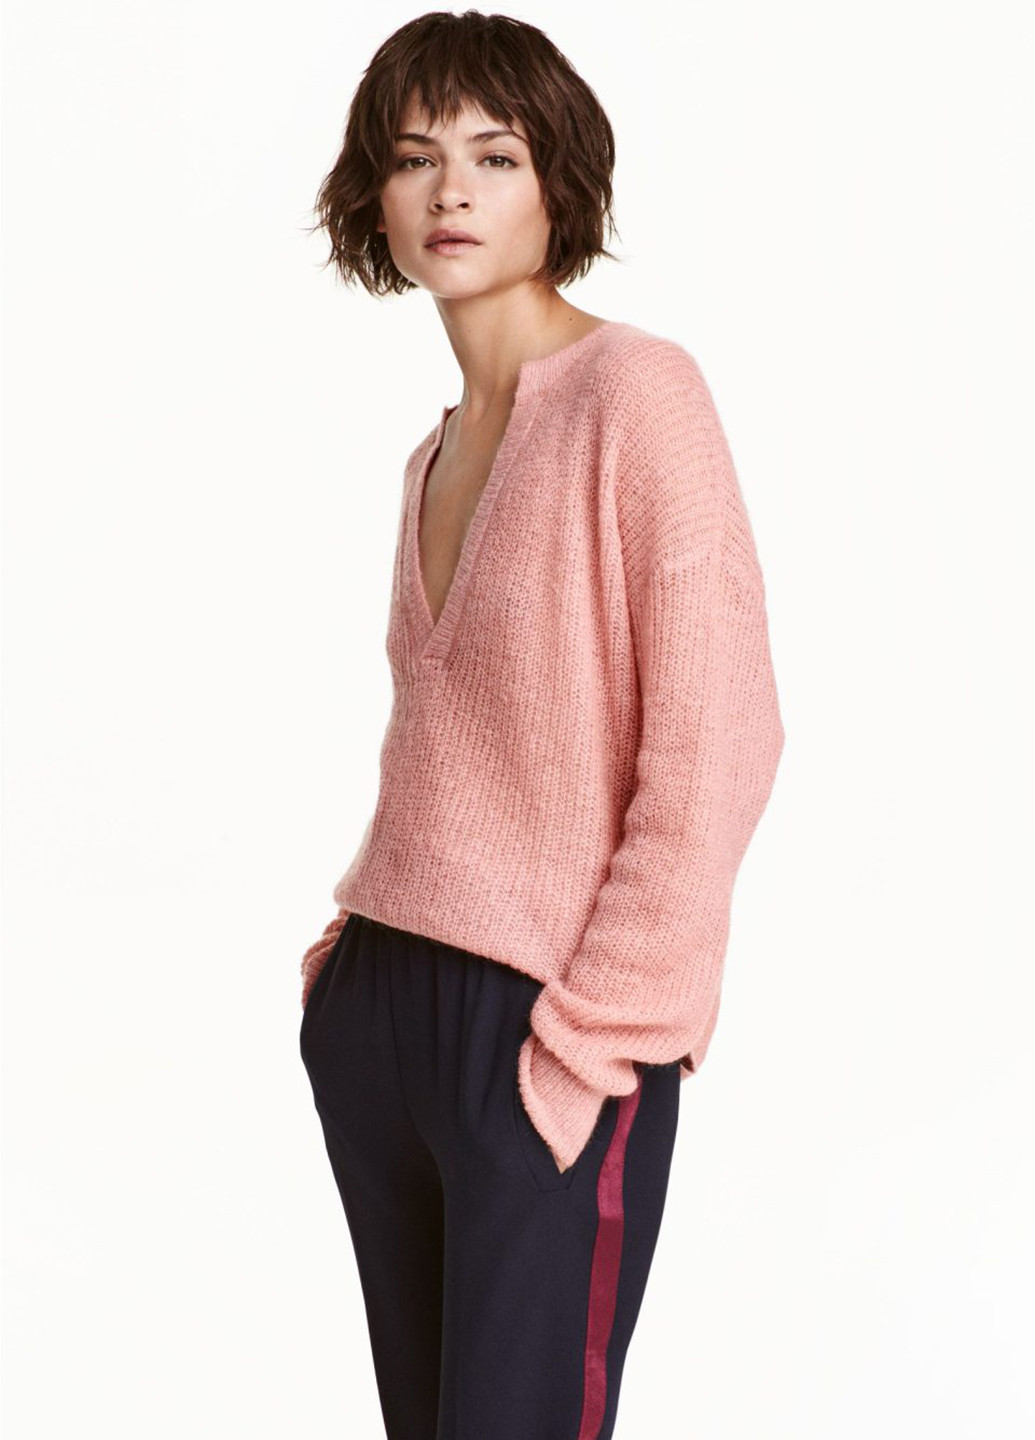 Розовый демисезонный пуловер пуловер H&M